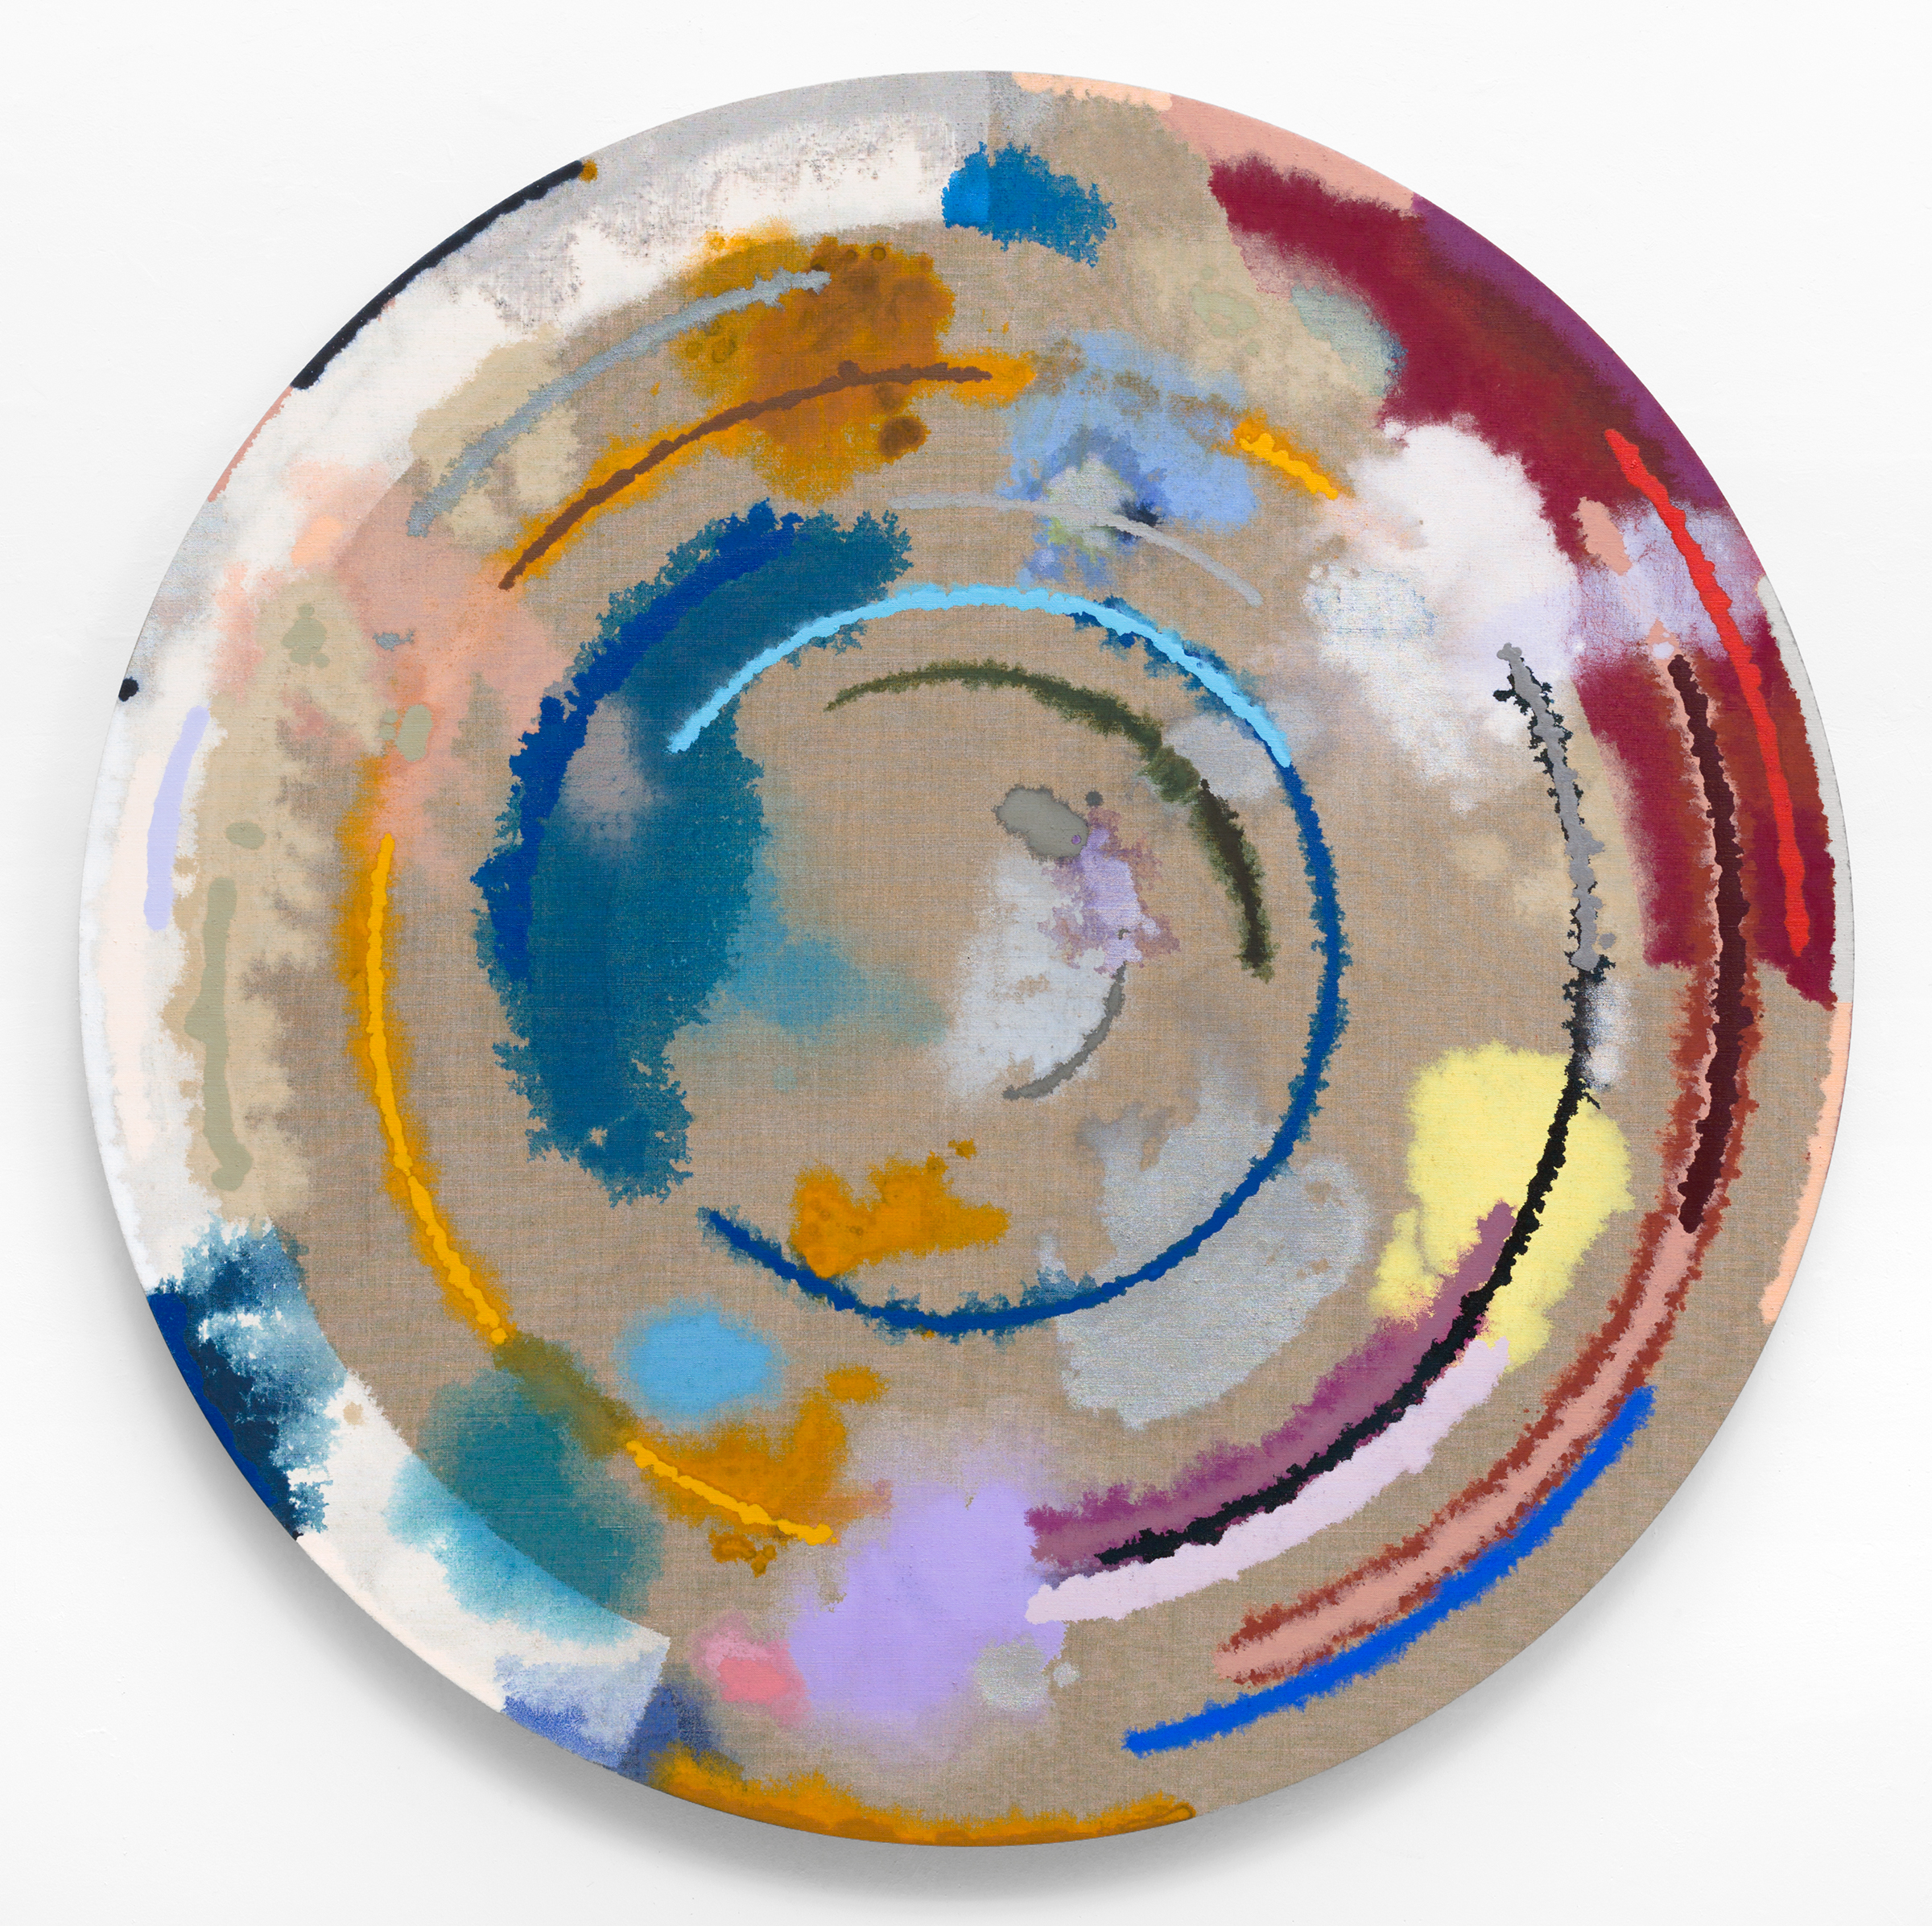  PAMELA JORDEN Untitled , 2016 Oil on linen, 48” diameter 